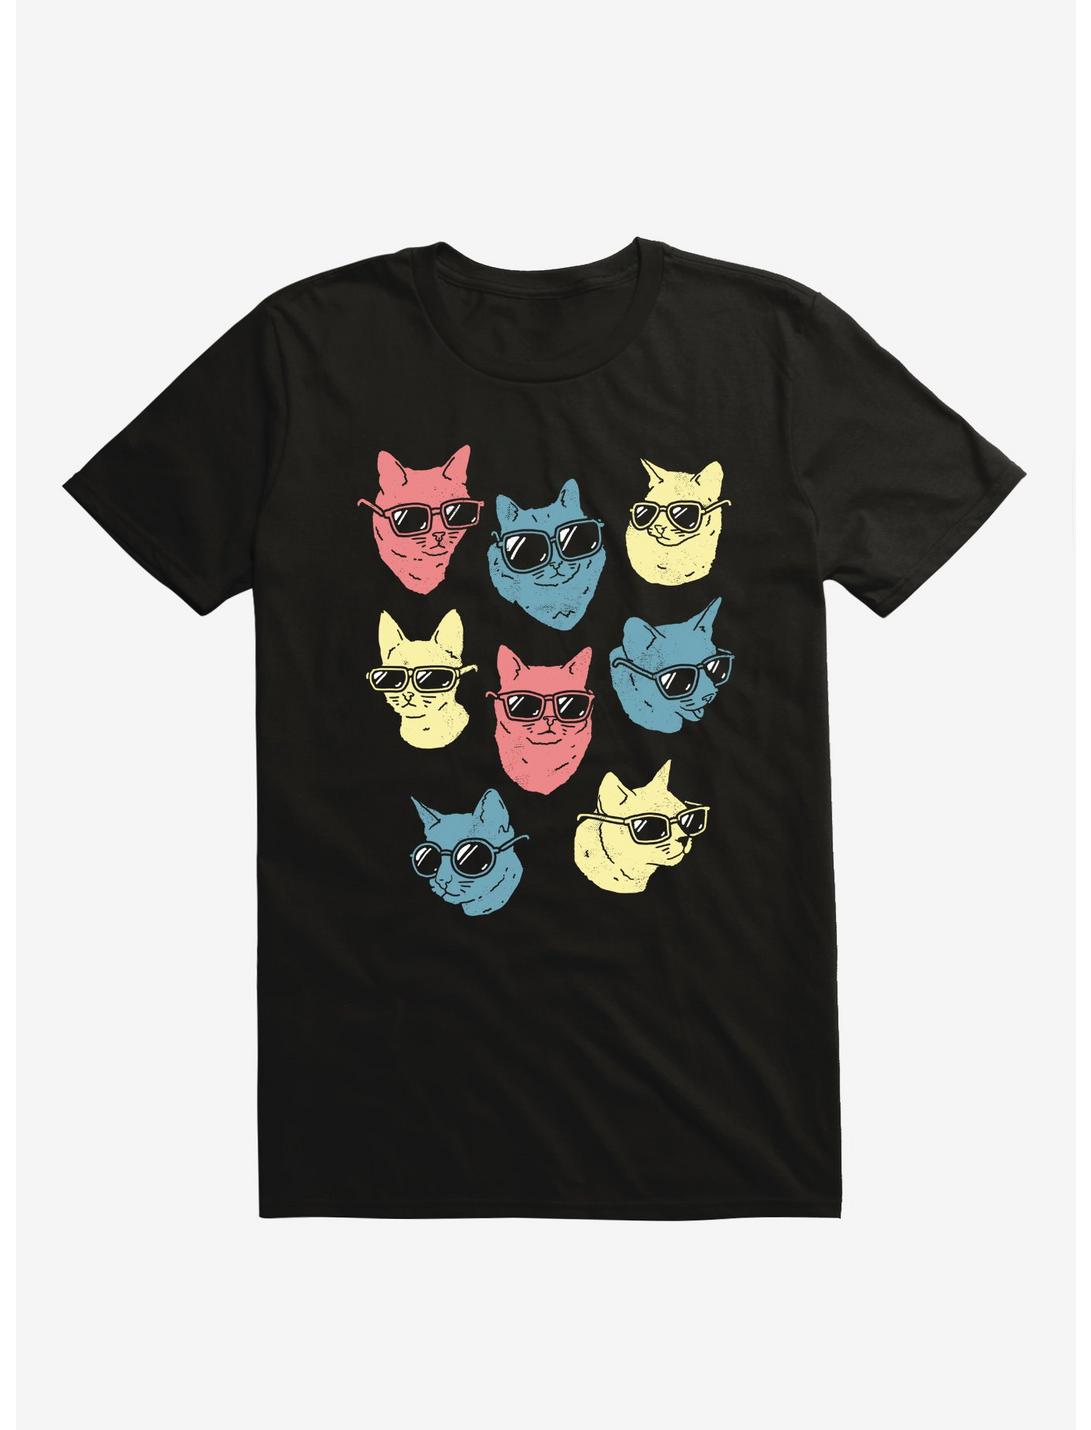 Cool Cats Black T-Shirt, BLACK, hi-res